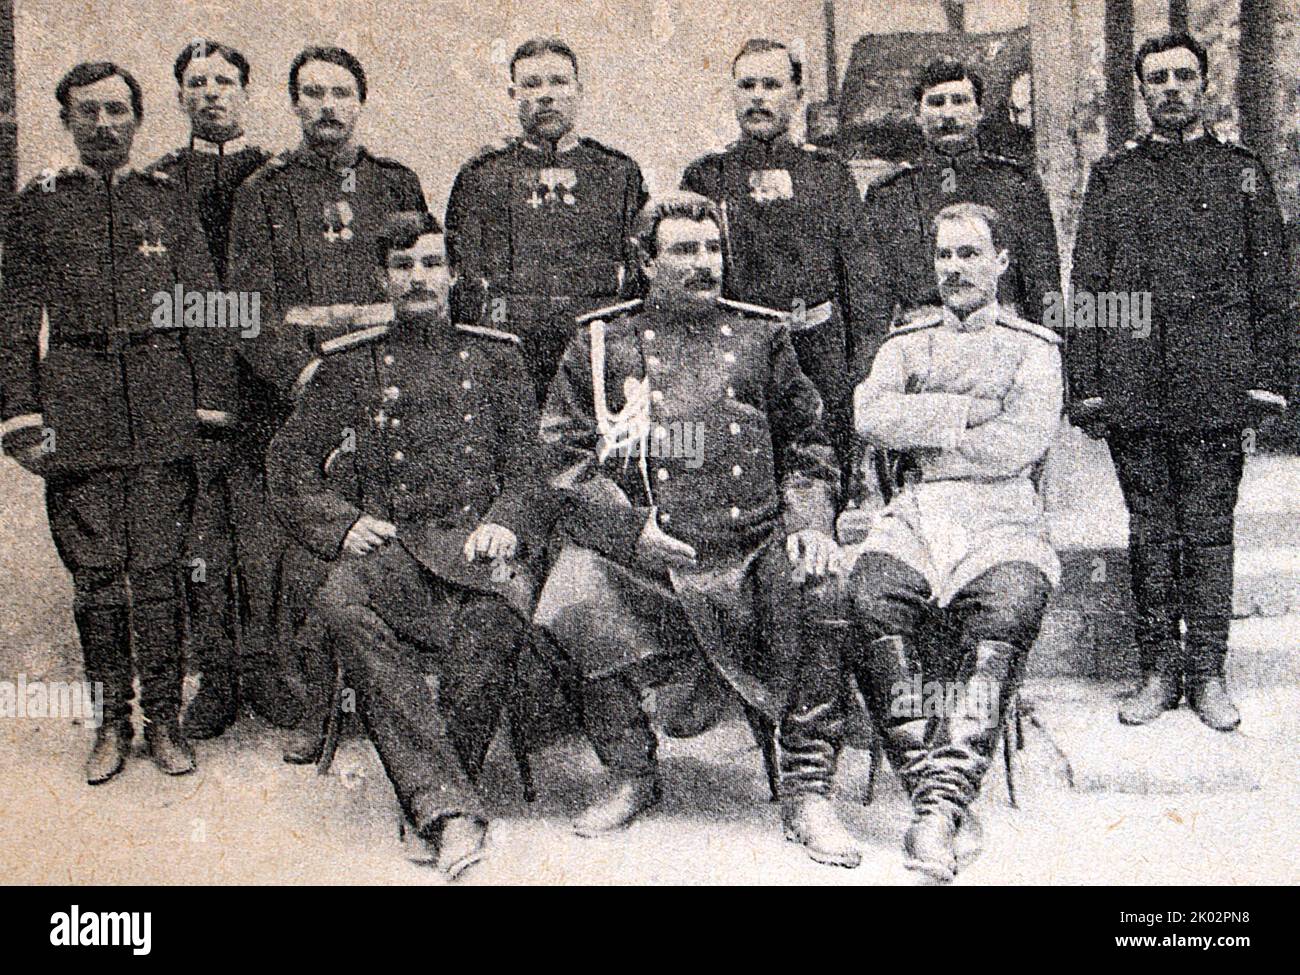 Un gruppo di partecipanti alla spedizione di N. M. Przhevalsky. Seduta (da sinistra a destra): P.K. Kozlov, N.M. Przhevalsky, V.I. Roborovsky. Foto del 80s del 19th ° secolo. Nikolay Mikhayovich Przhevalsky (1839 – 1888) è stato un . 1 Foto Stock